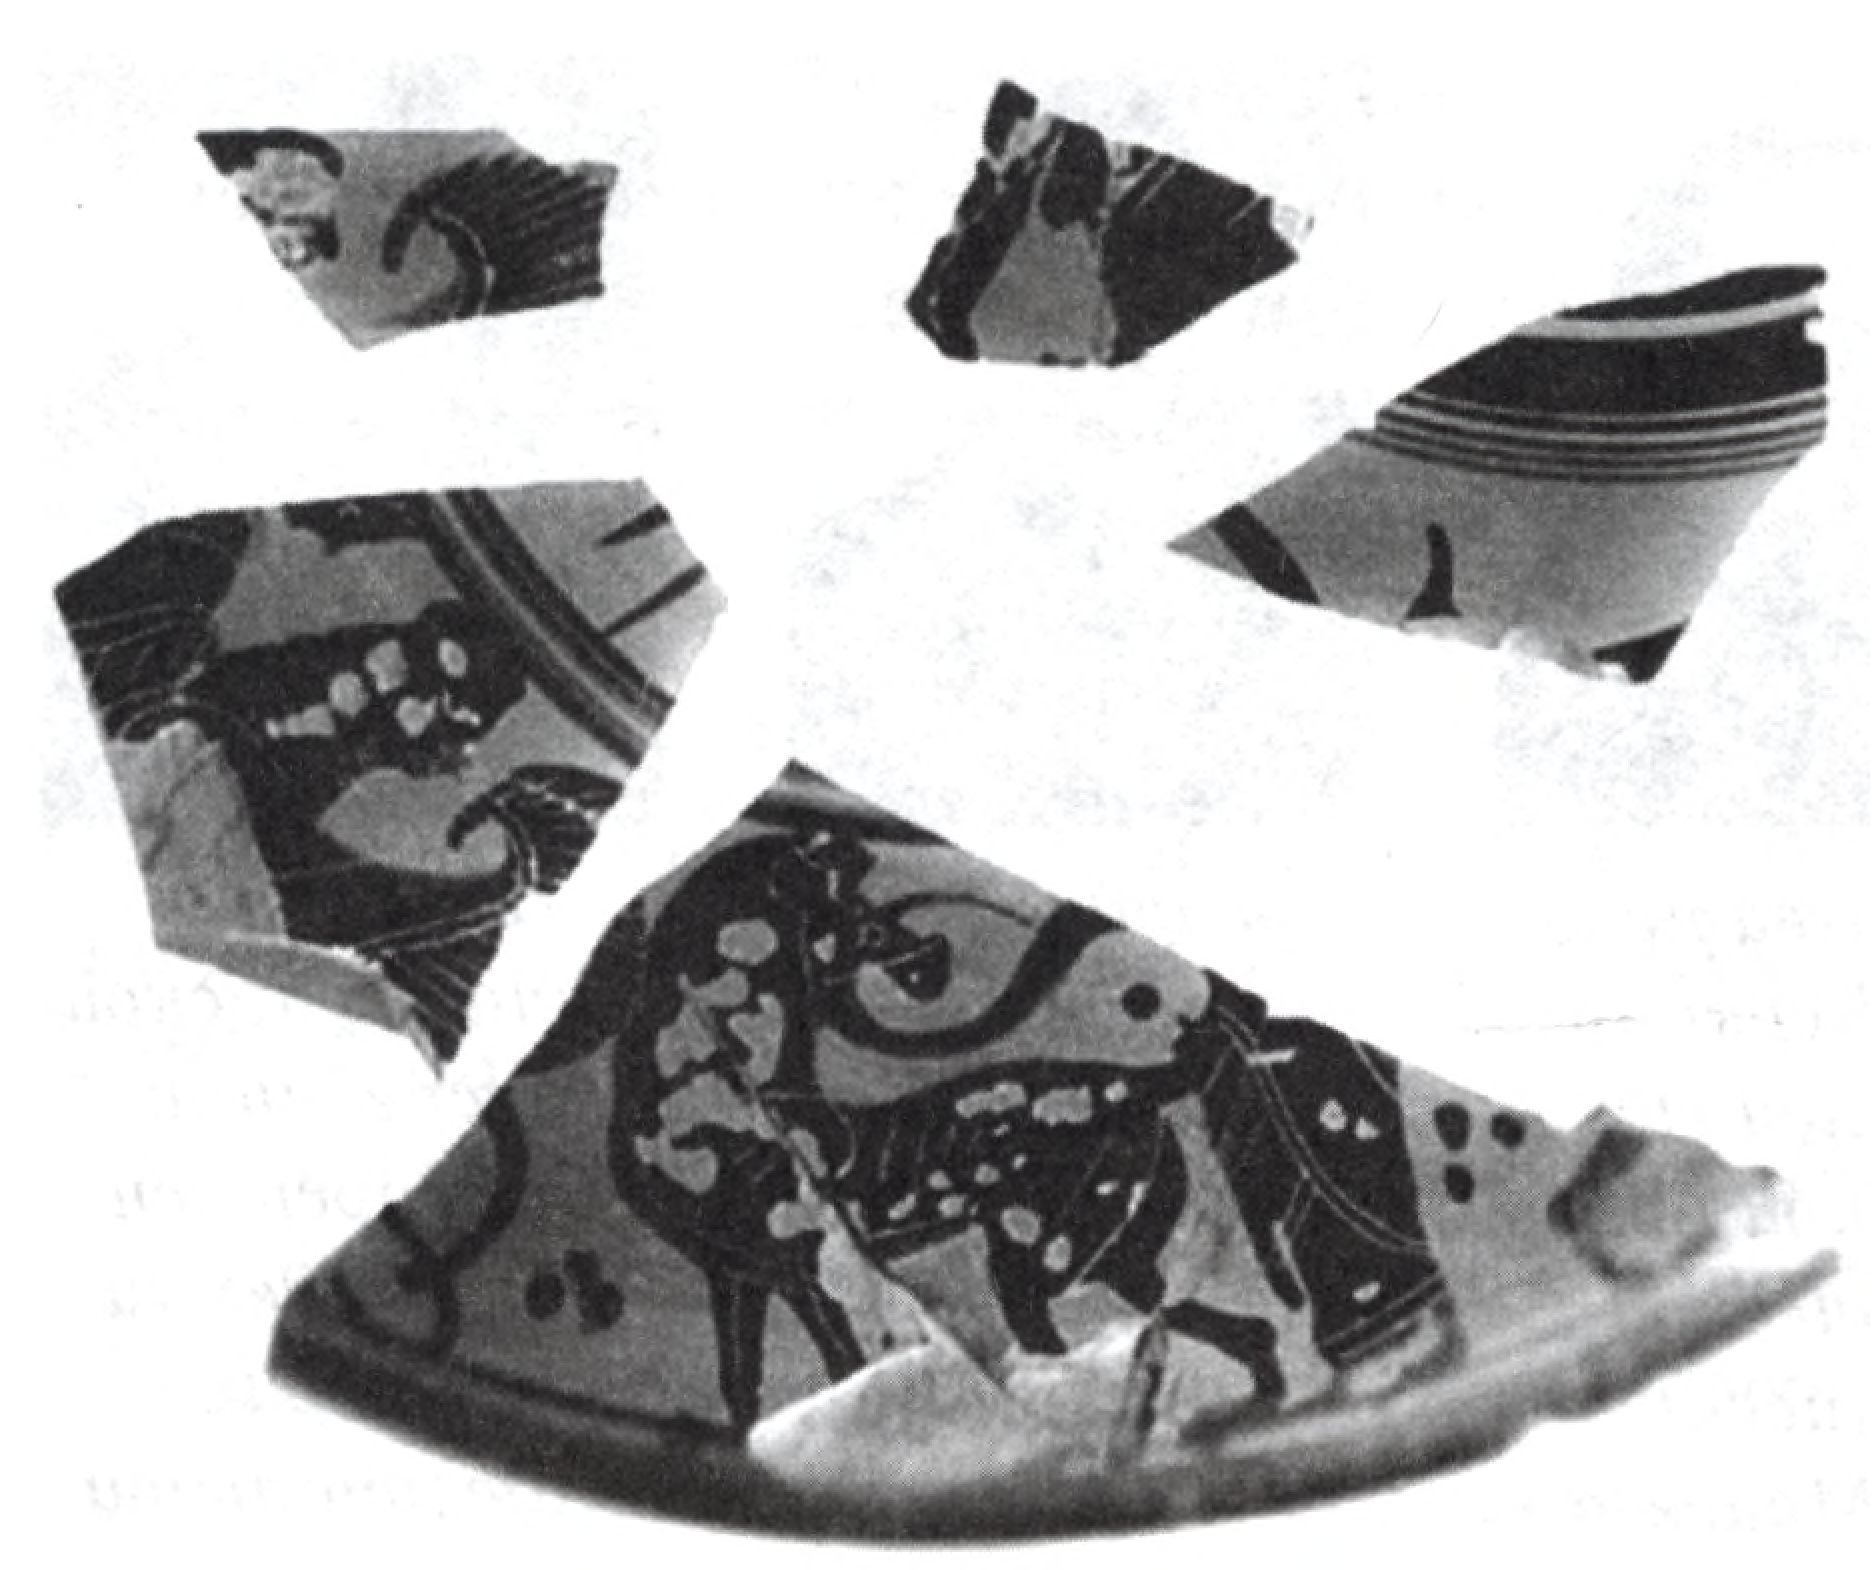 Обломки аттической чернофигурной лекины (сосуда для туалетных принадлежностей) середины VI в. до н. э. с изображением сирены и пантеры в геральдической позе, фланкируемые человеческими фигурами, закутанными в гиматий. Находка 2000 г. на Дувановской улице